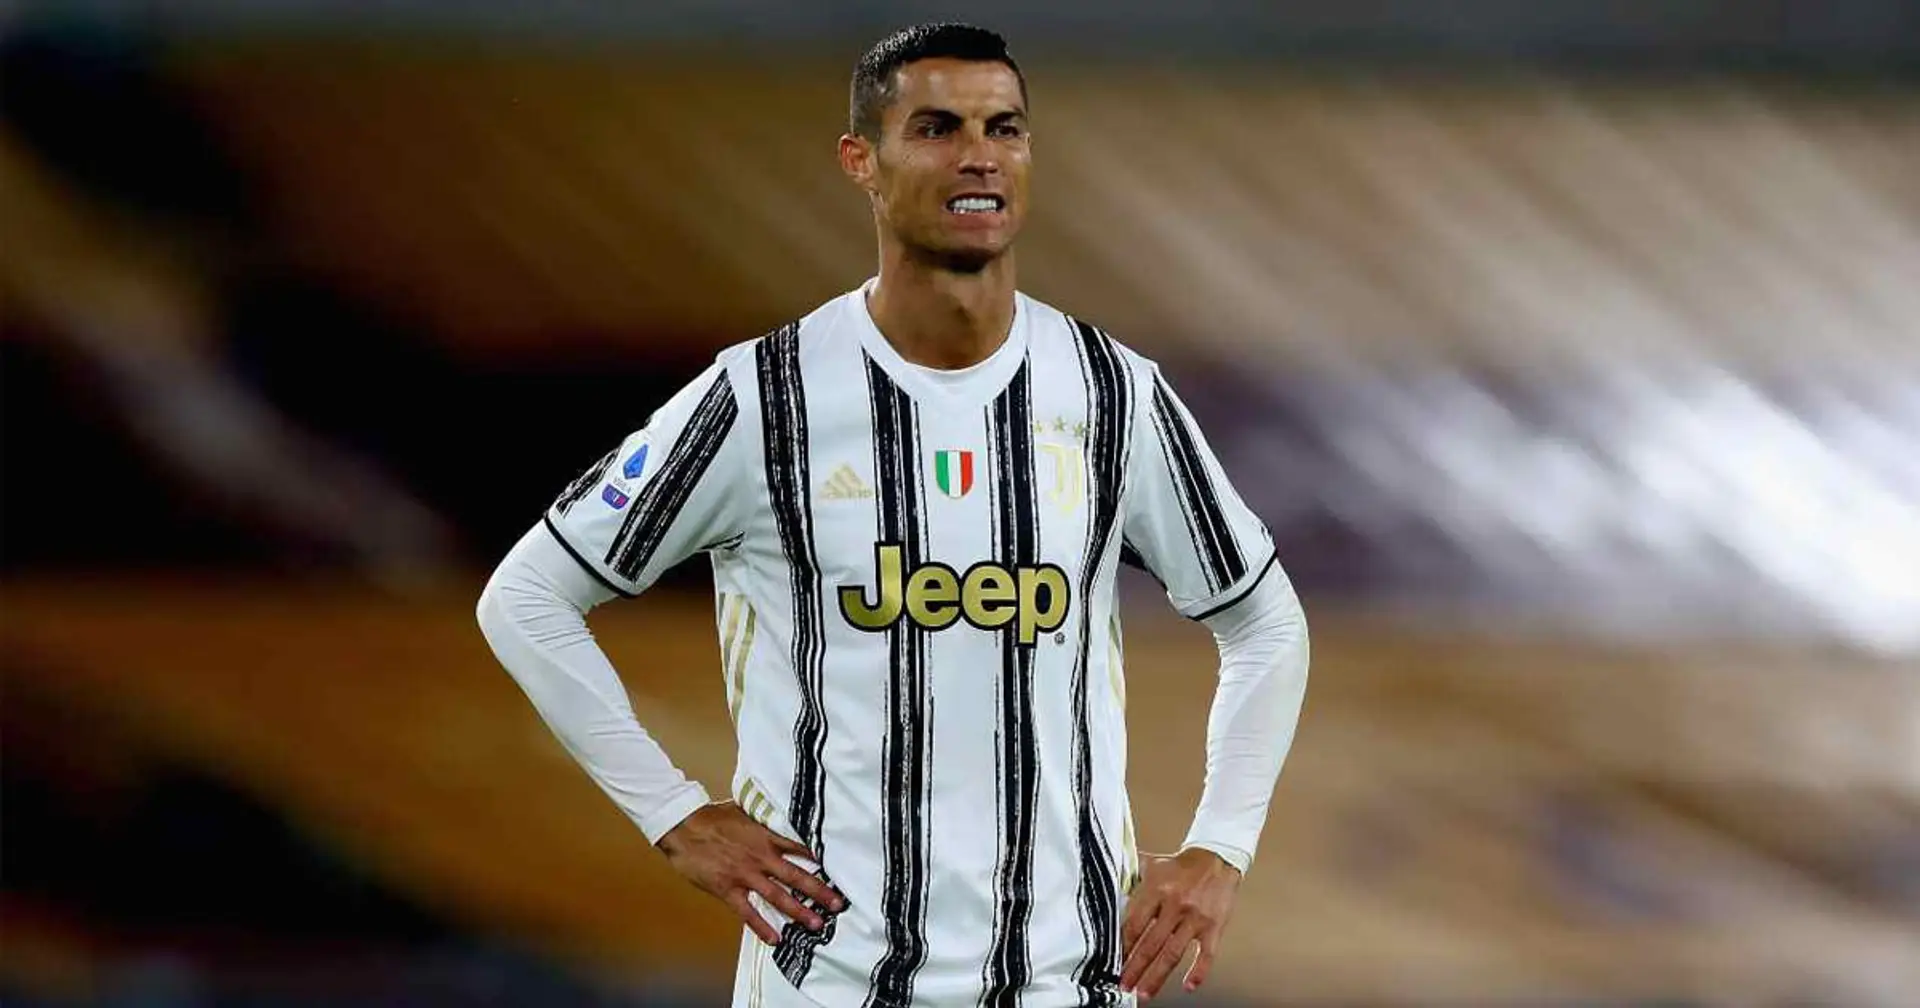 Ronaldo partirà dalla panchina, ma scalpita per entrare: i numeri senza il portoghese preoccupano Pirlo e la Juventus